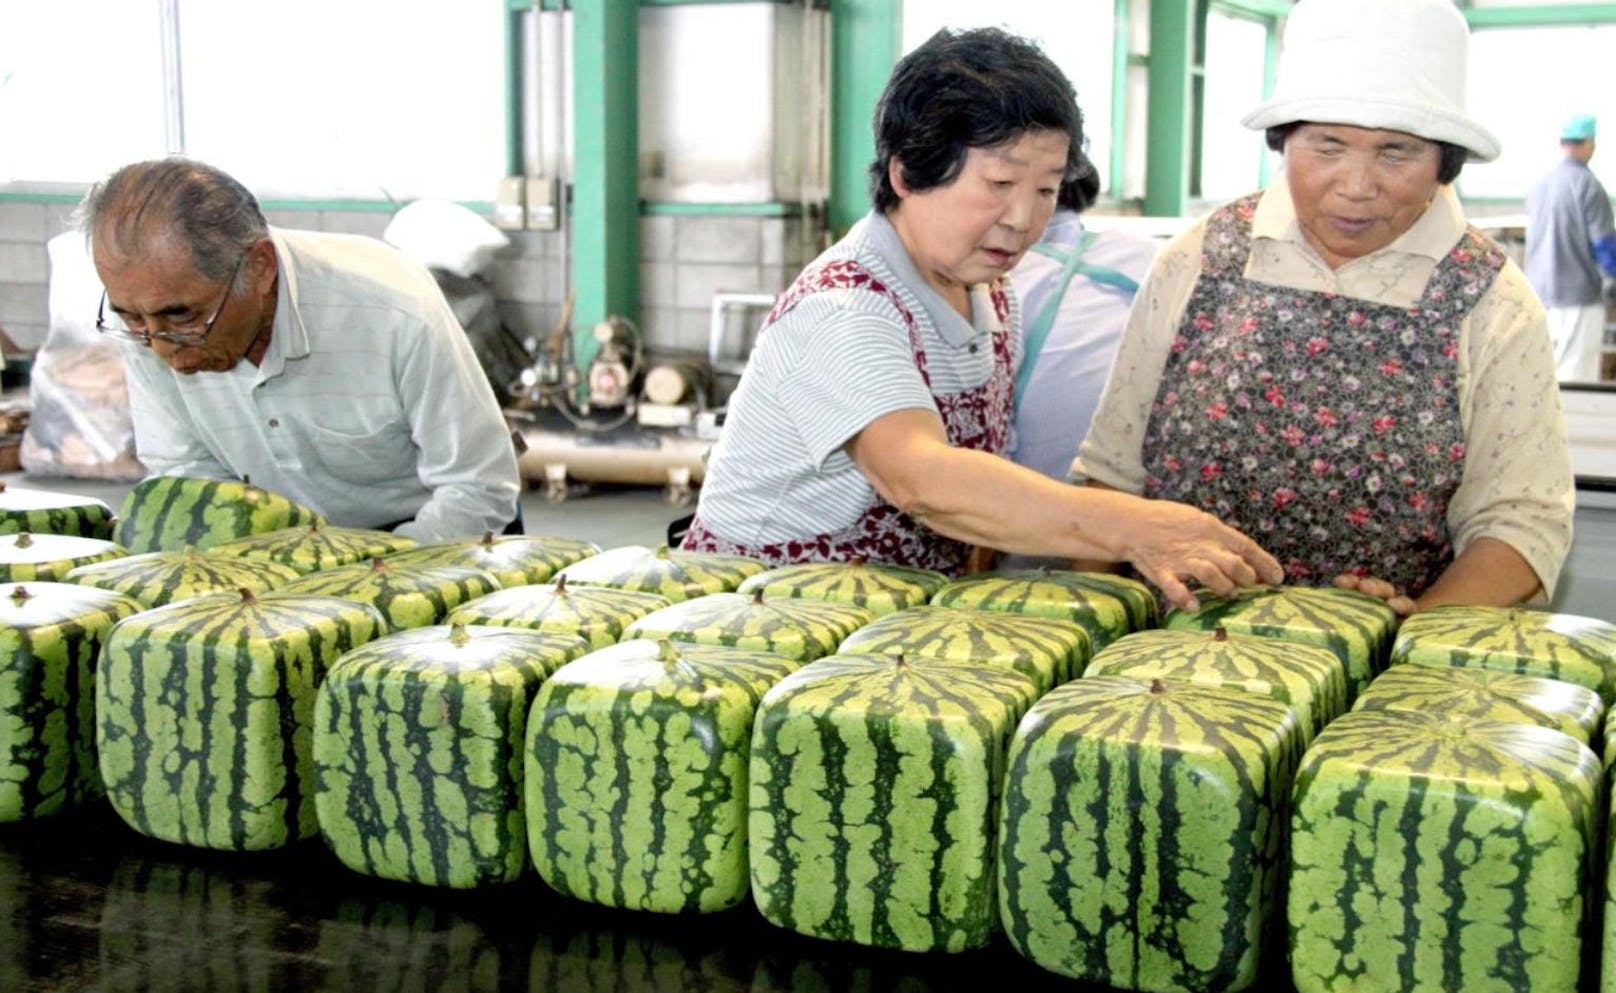 Auch nicht günstig: Die berühmten quadratischen Wassermelonen. Sie sind ungeniessbar, aber als Schmuckgegenstand beliebt. Sie kosten rund 80 Euro pro Stück.